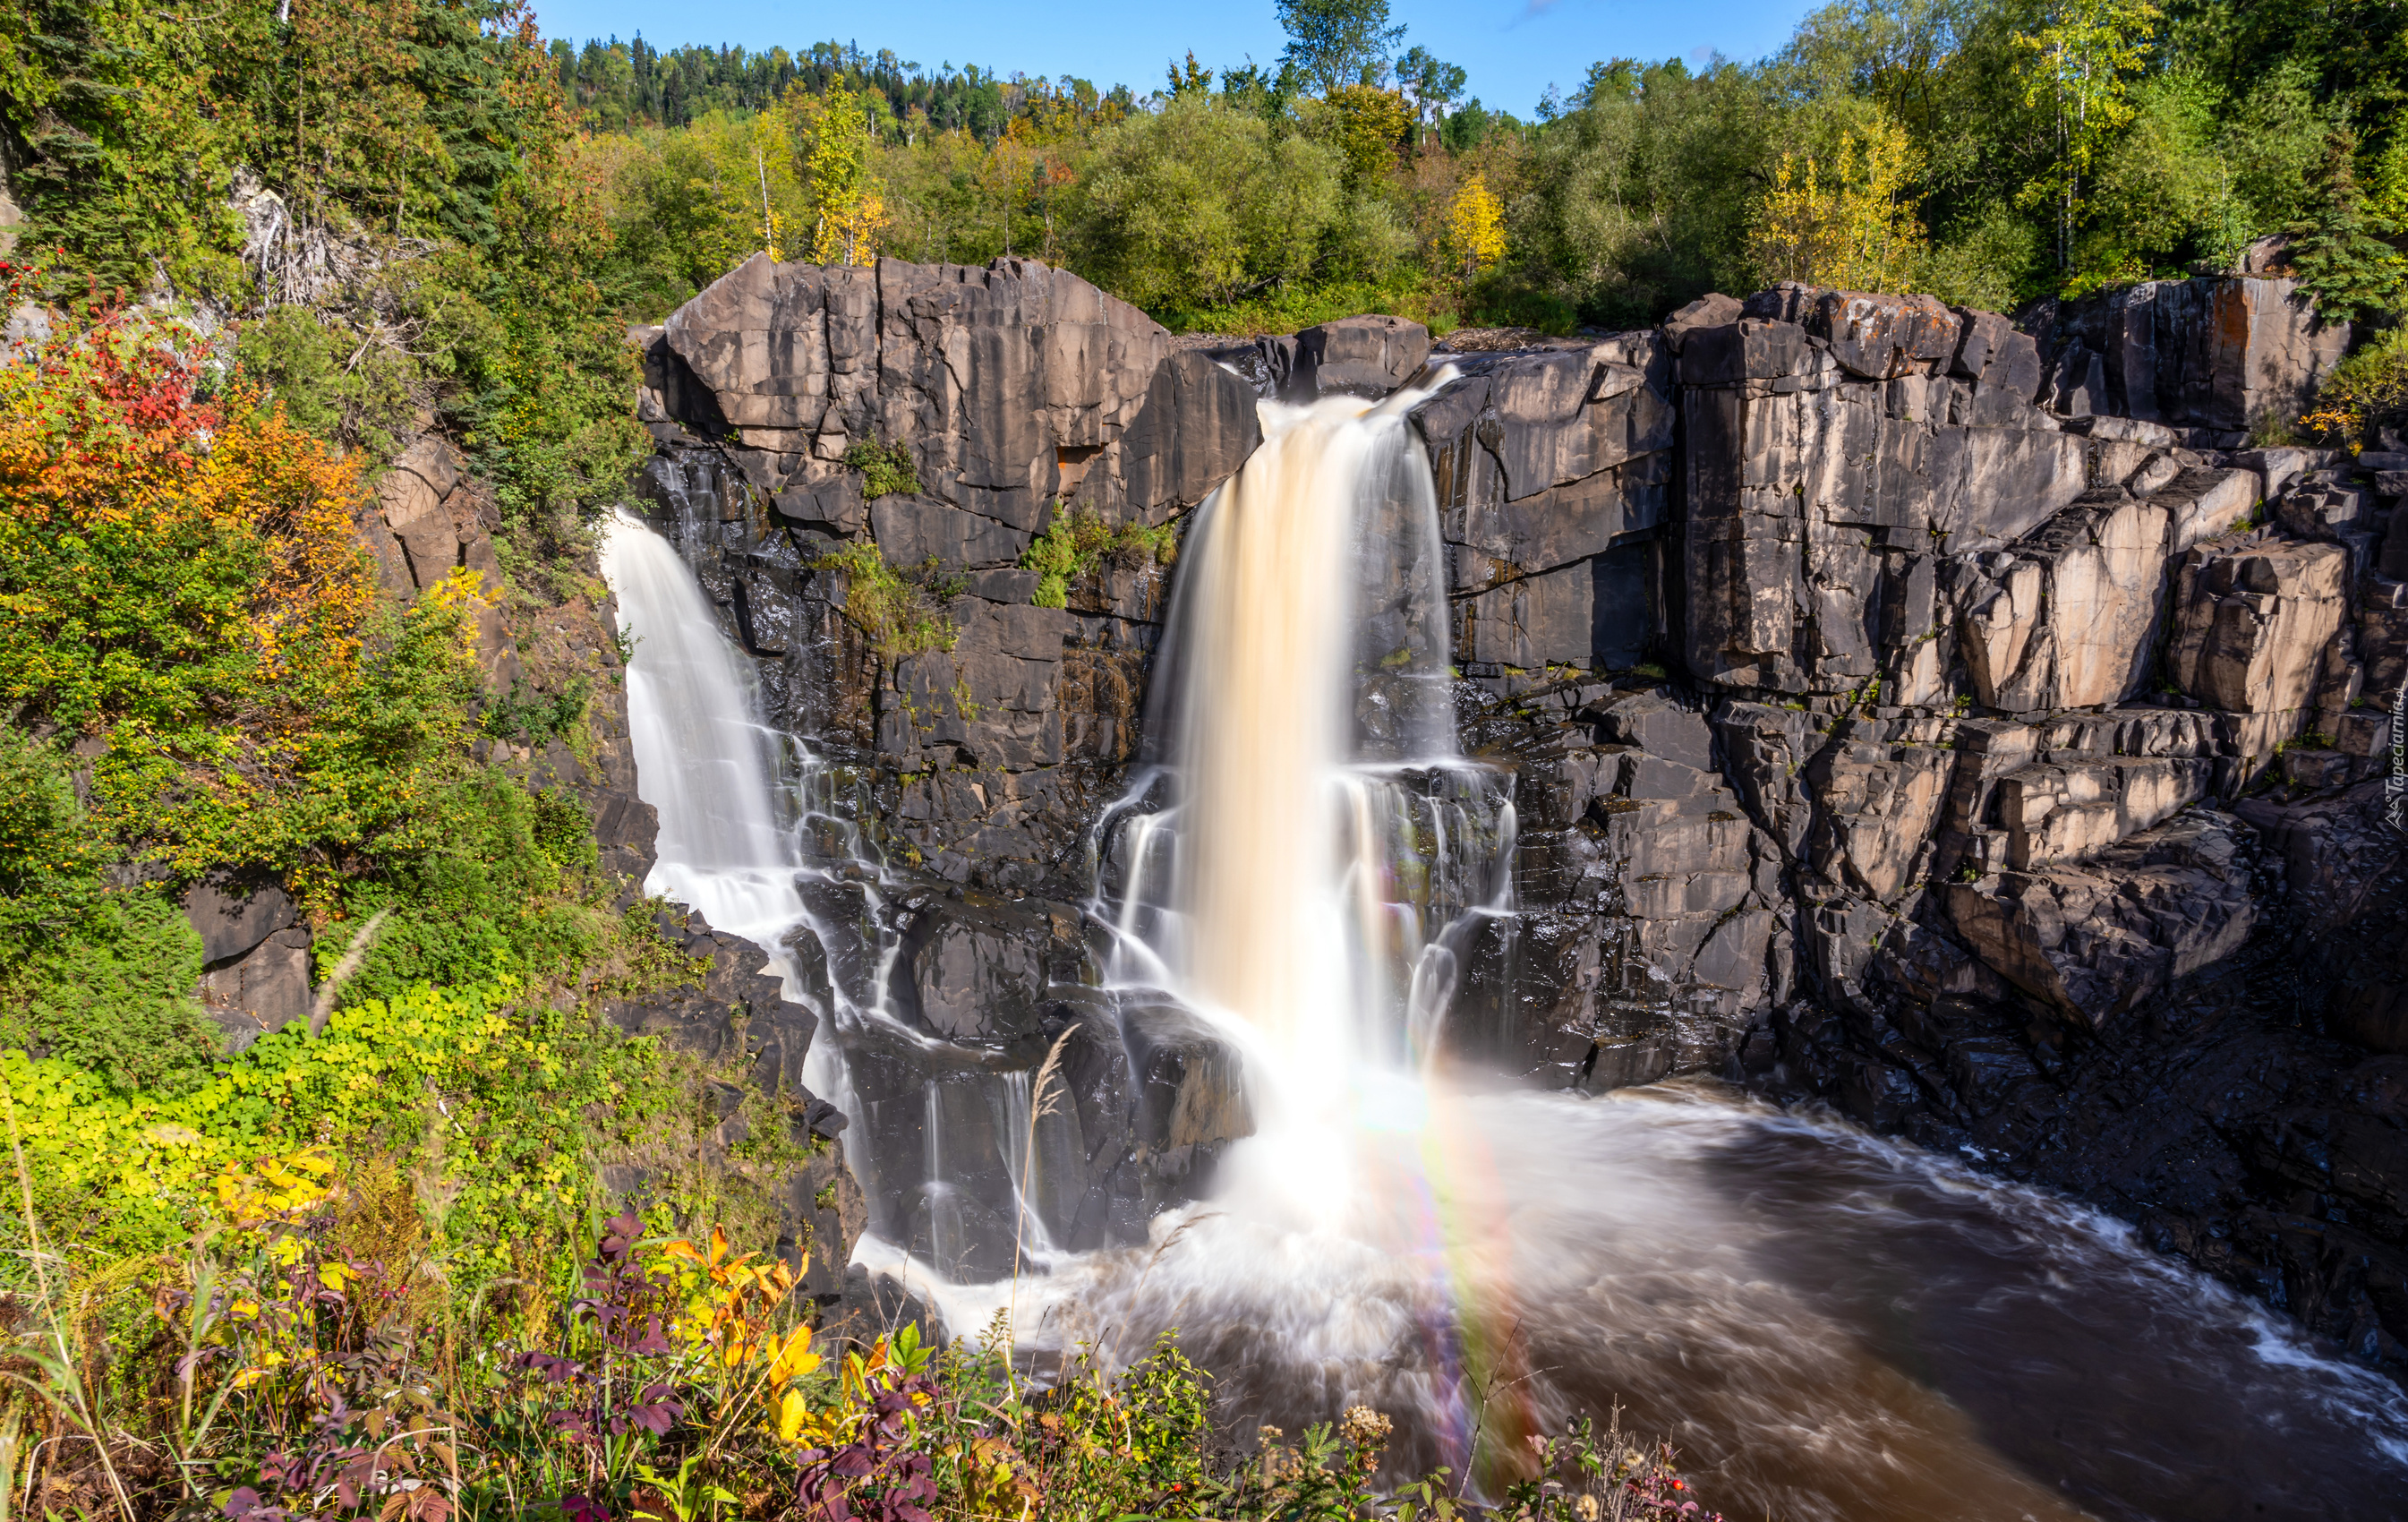 Wodospad, Skały, High Falls of the Pigeon River, Rzeka Pigeon River, Drzewa, Park stanowy Grand Portage, Stan Minnesota, Stany Zjednoczone